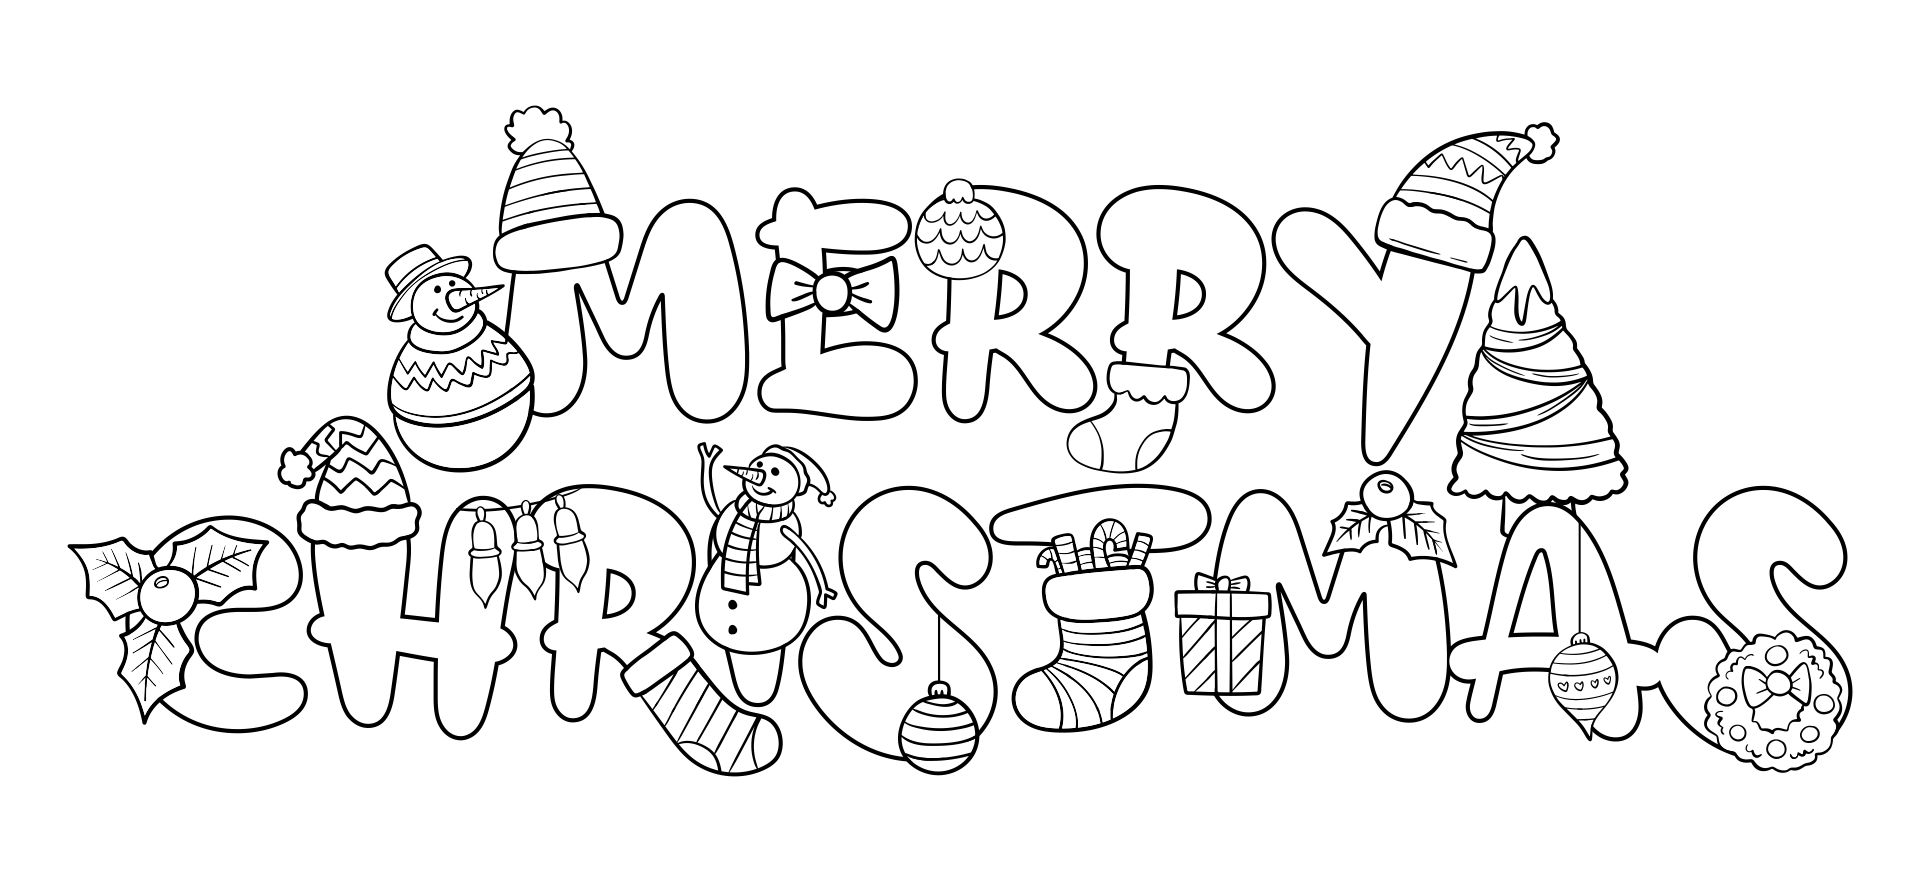 Printable Bubble Writing Merry Christmas